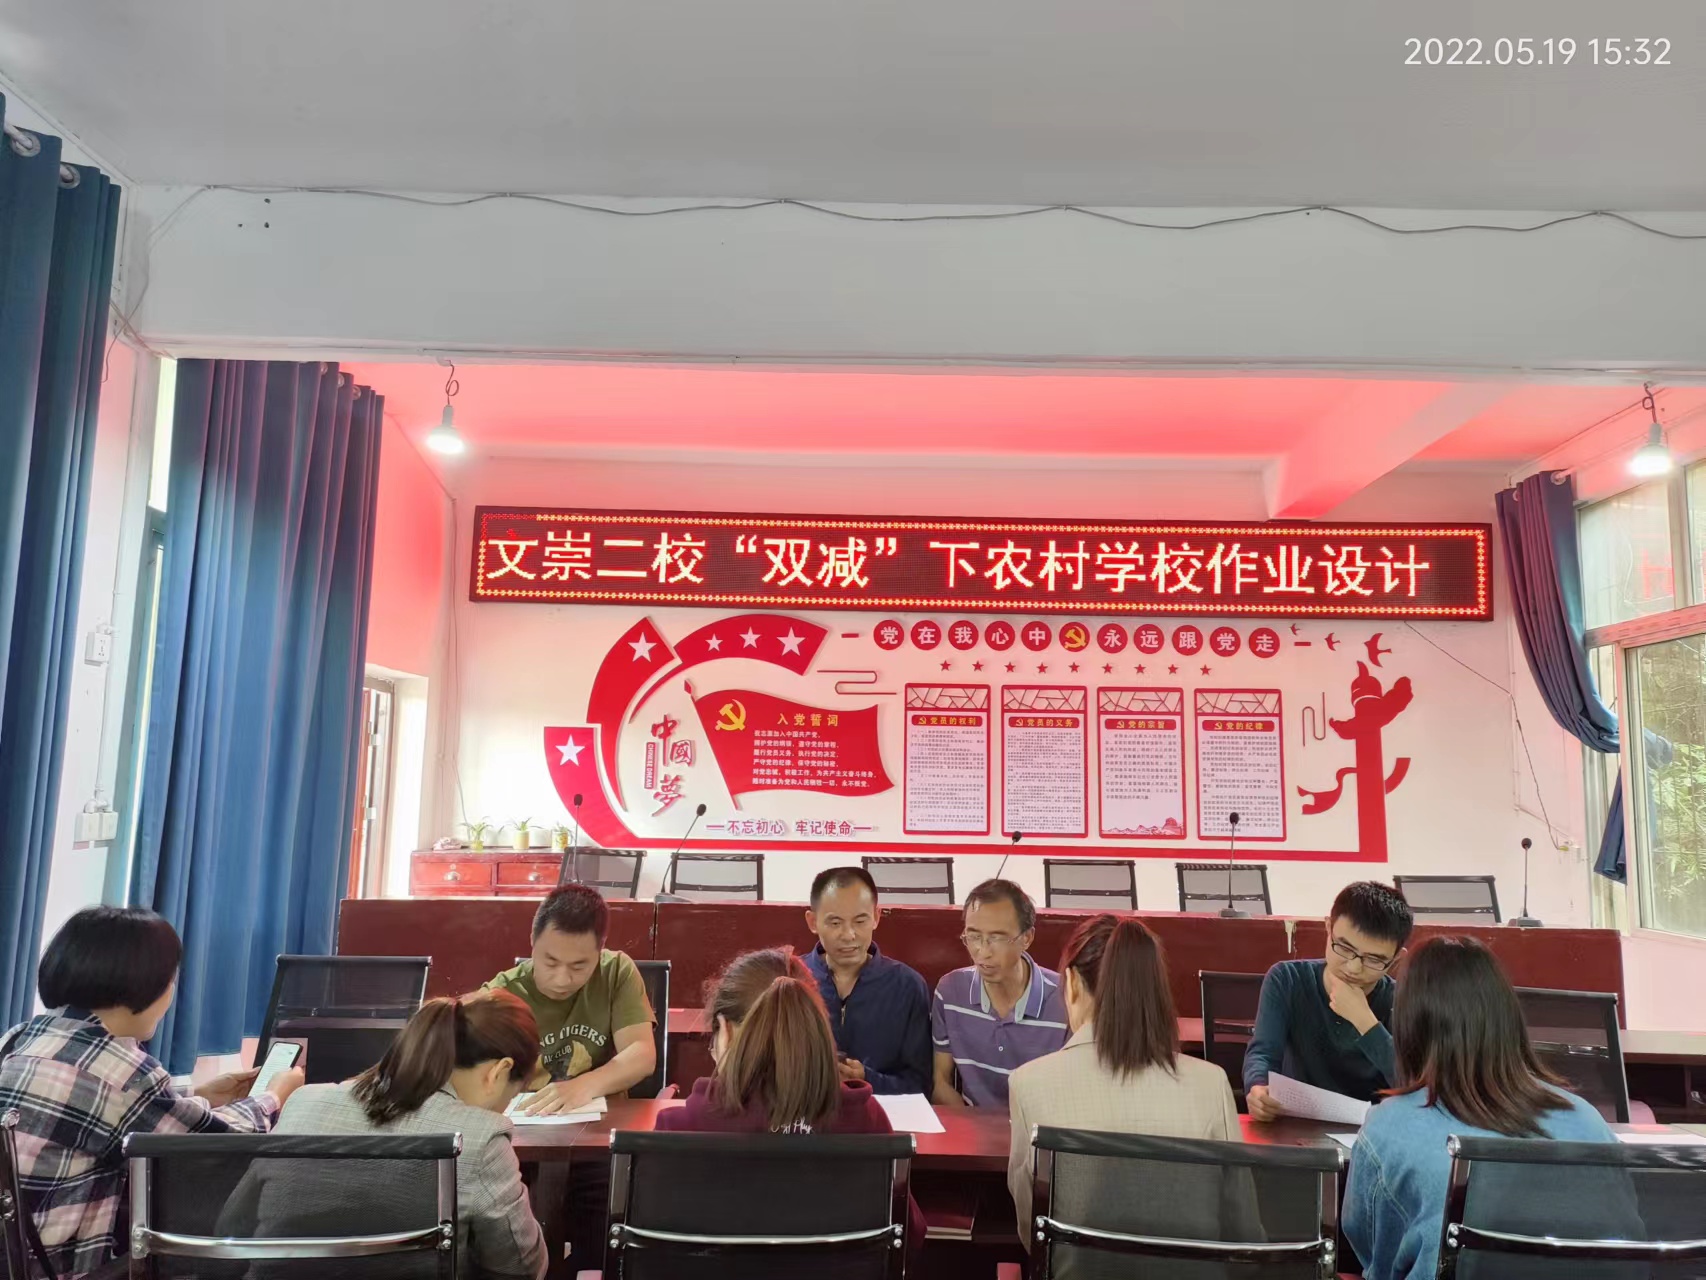 渠县文崇镇第二学校“双减”专题研讨会——农村学校的作业设计